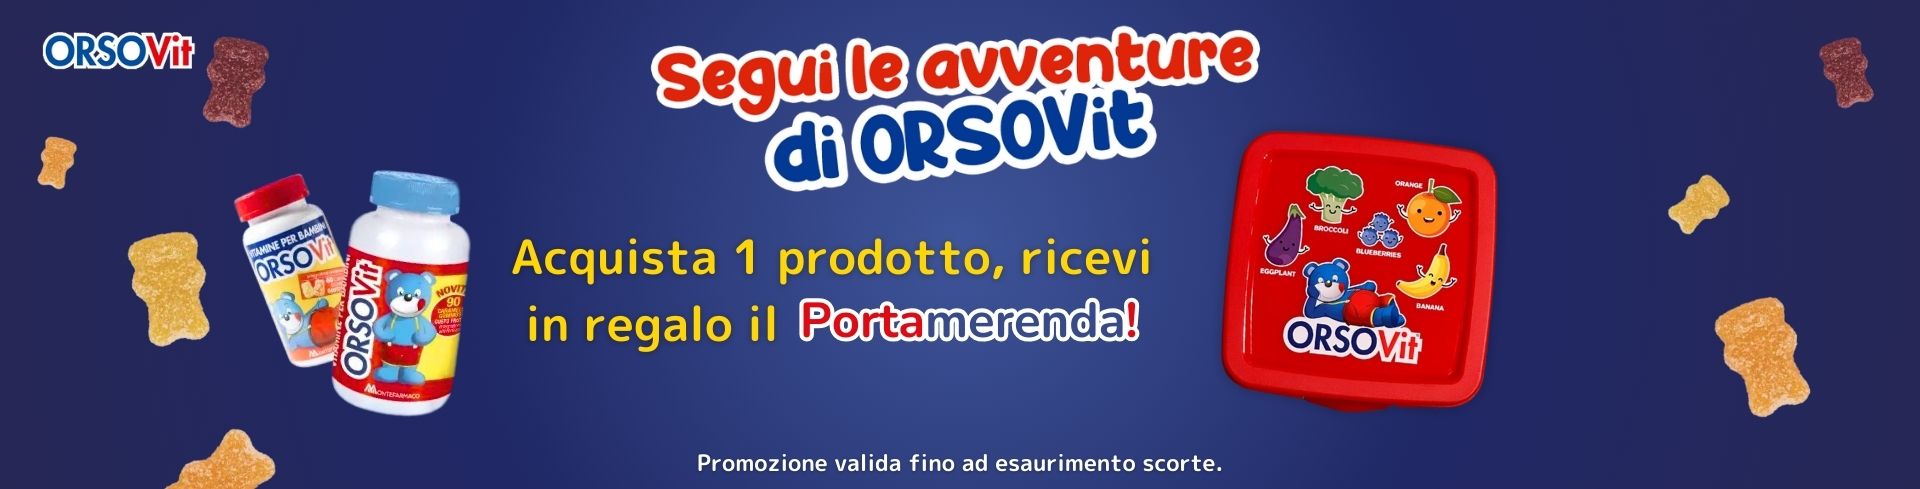 banner promozionale orsovit: acquista 1 prodotto, ricevi il portamerenda in regalo 